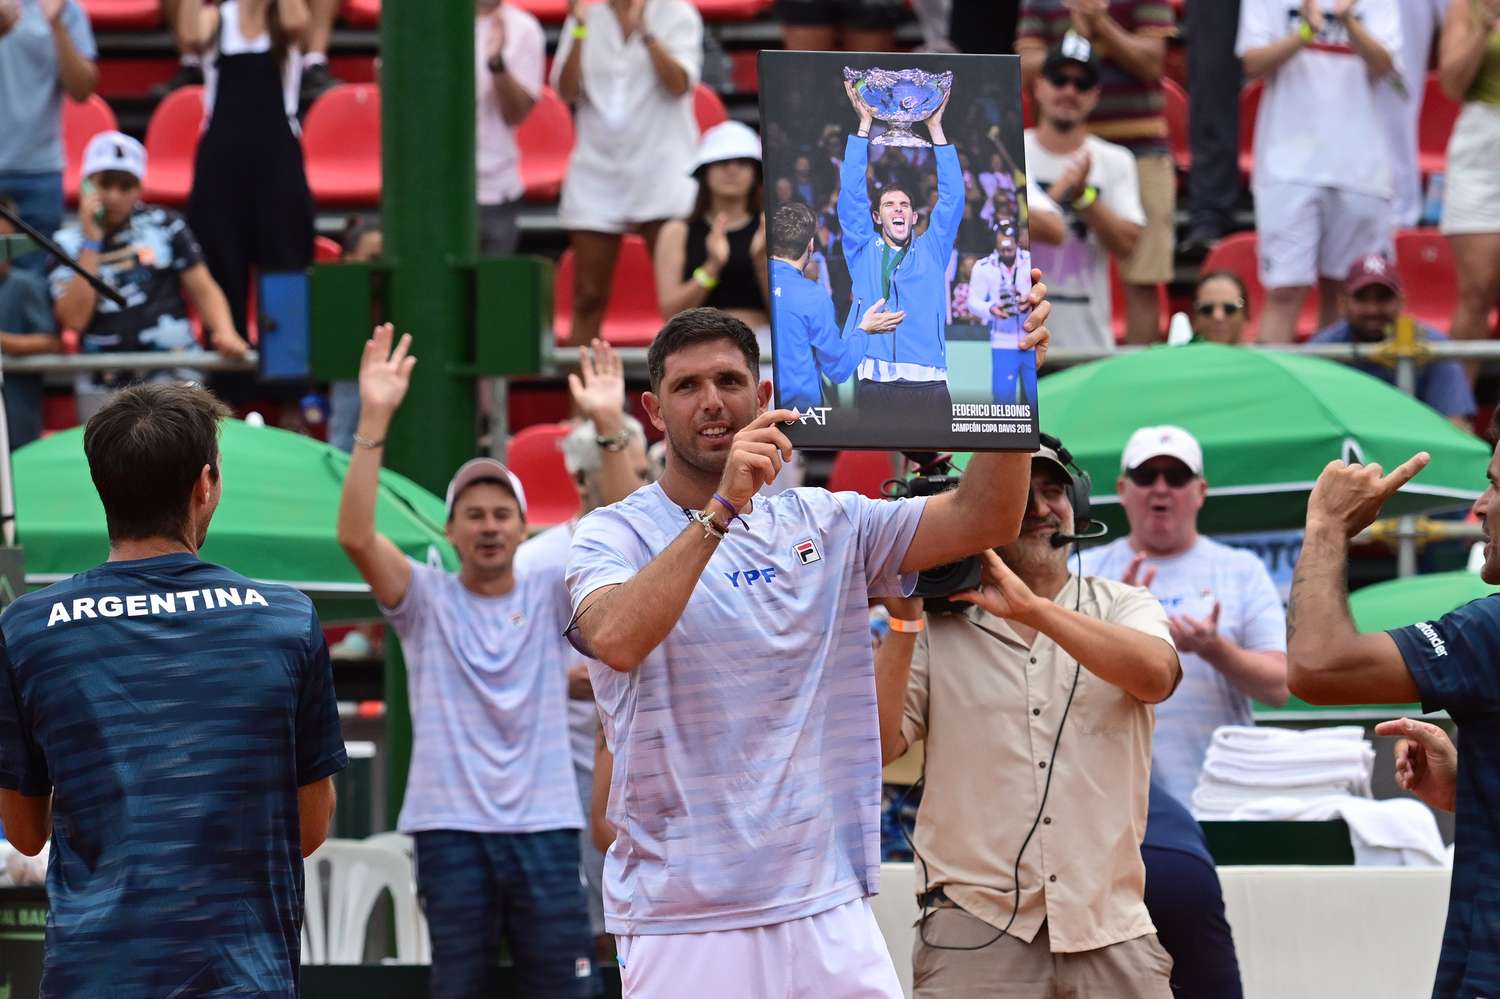 El emotivo homenaje al azuleño Federico Delbonis tras anunciar su retiro del tenis: "Terminar así es todo lo que soñaba"